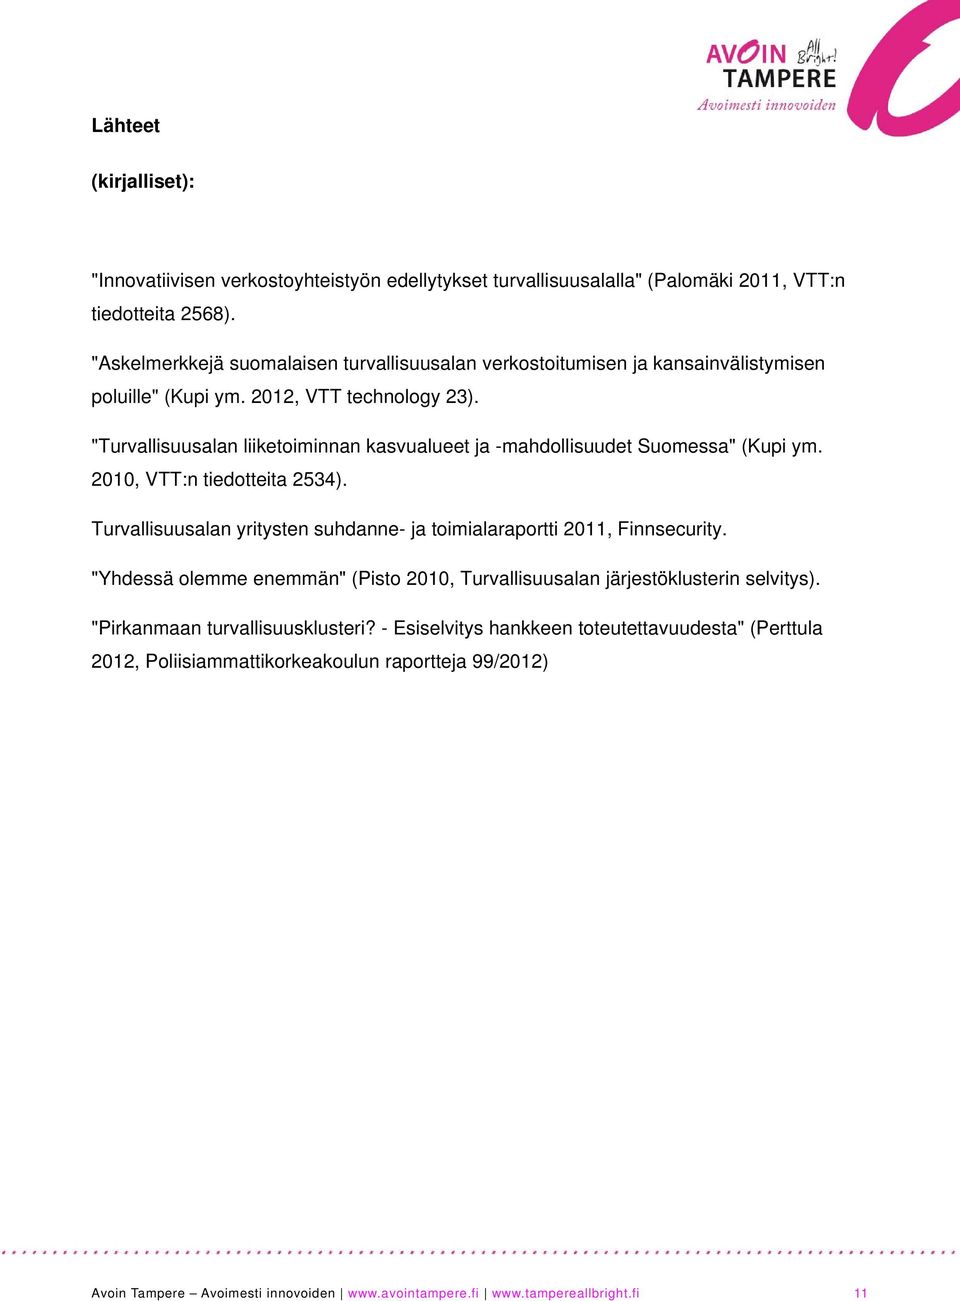 "Turvallisuusalan liiketoiminnan kasvualueet ja -mahdollisuudet Suomessa" (Kupi ym. 2010, VTT:n tiedotteita 2534).